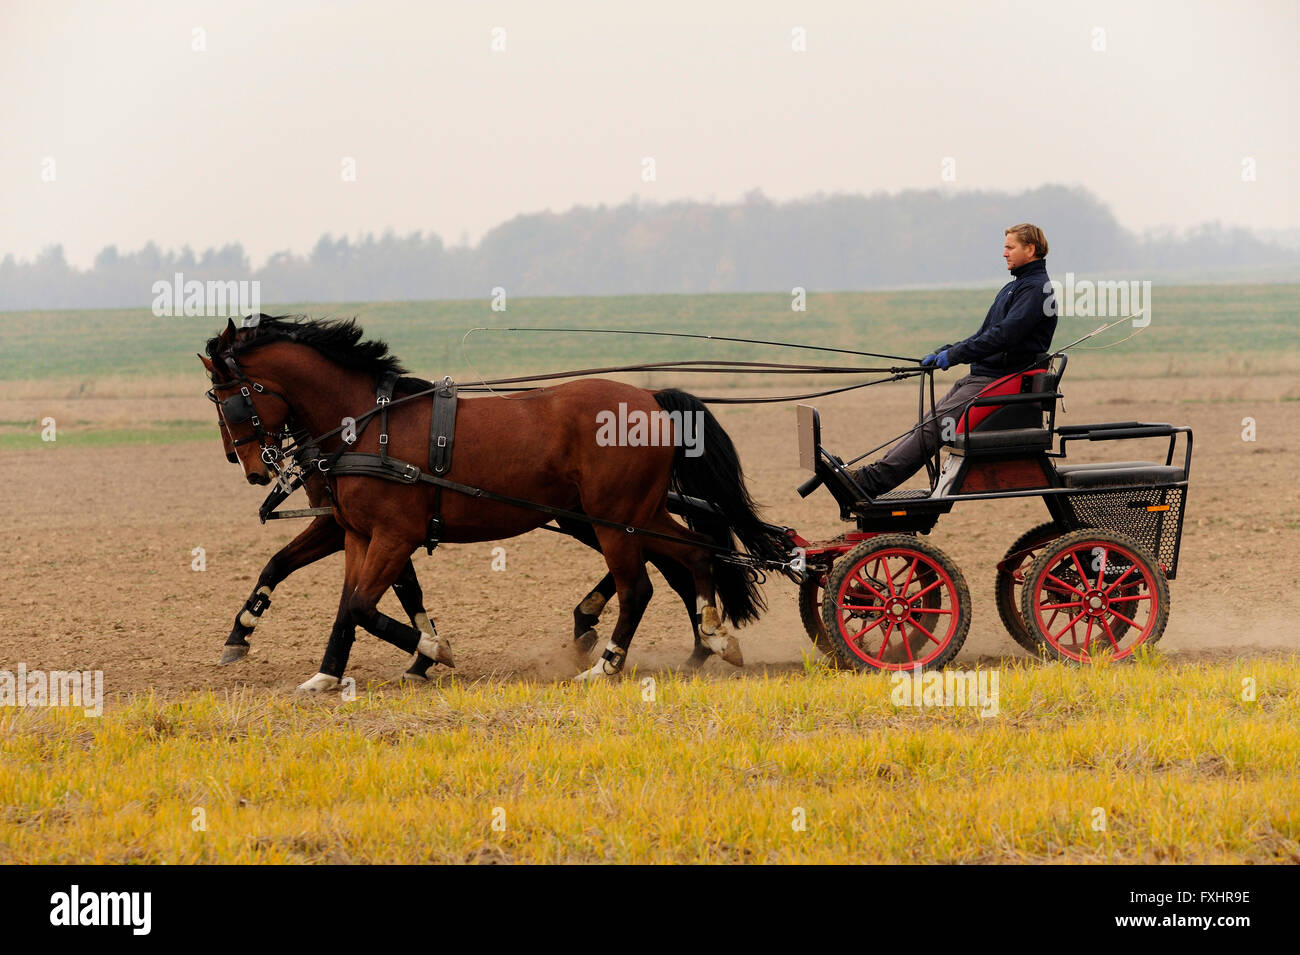 team, farming, horses, mazurek, piotr, carriages, sledding, riding, riding, horse riding, poland, pankow, dolnoslaskie, silesia, Stock Photo